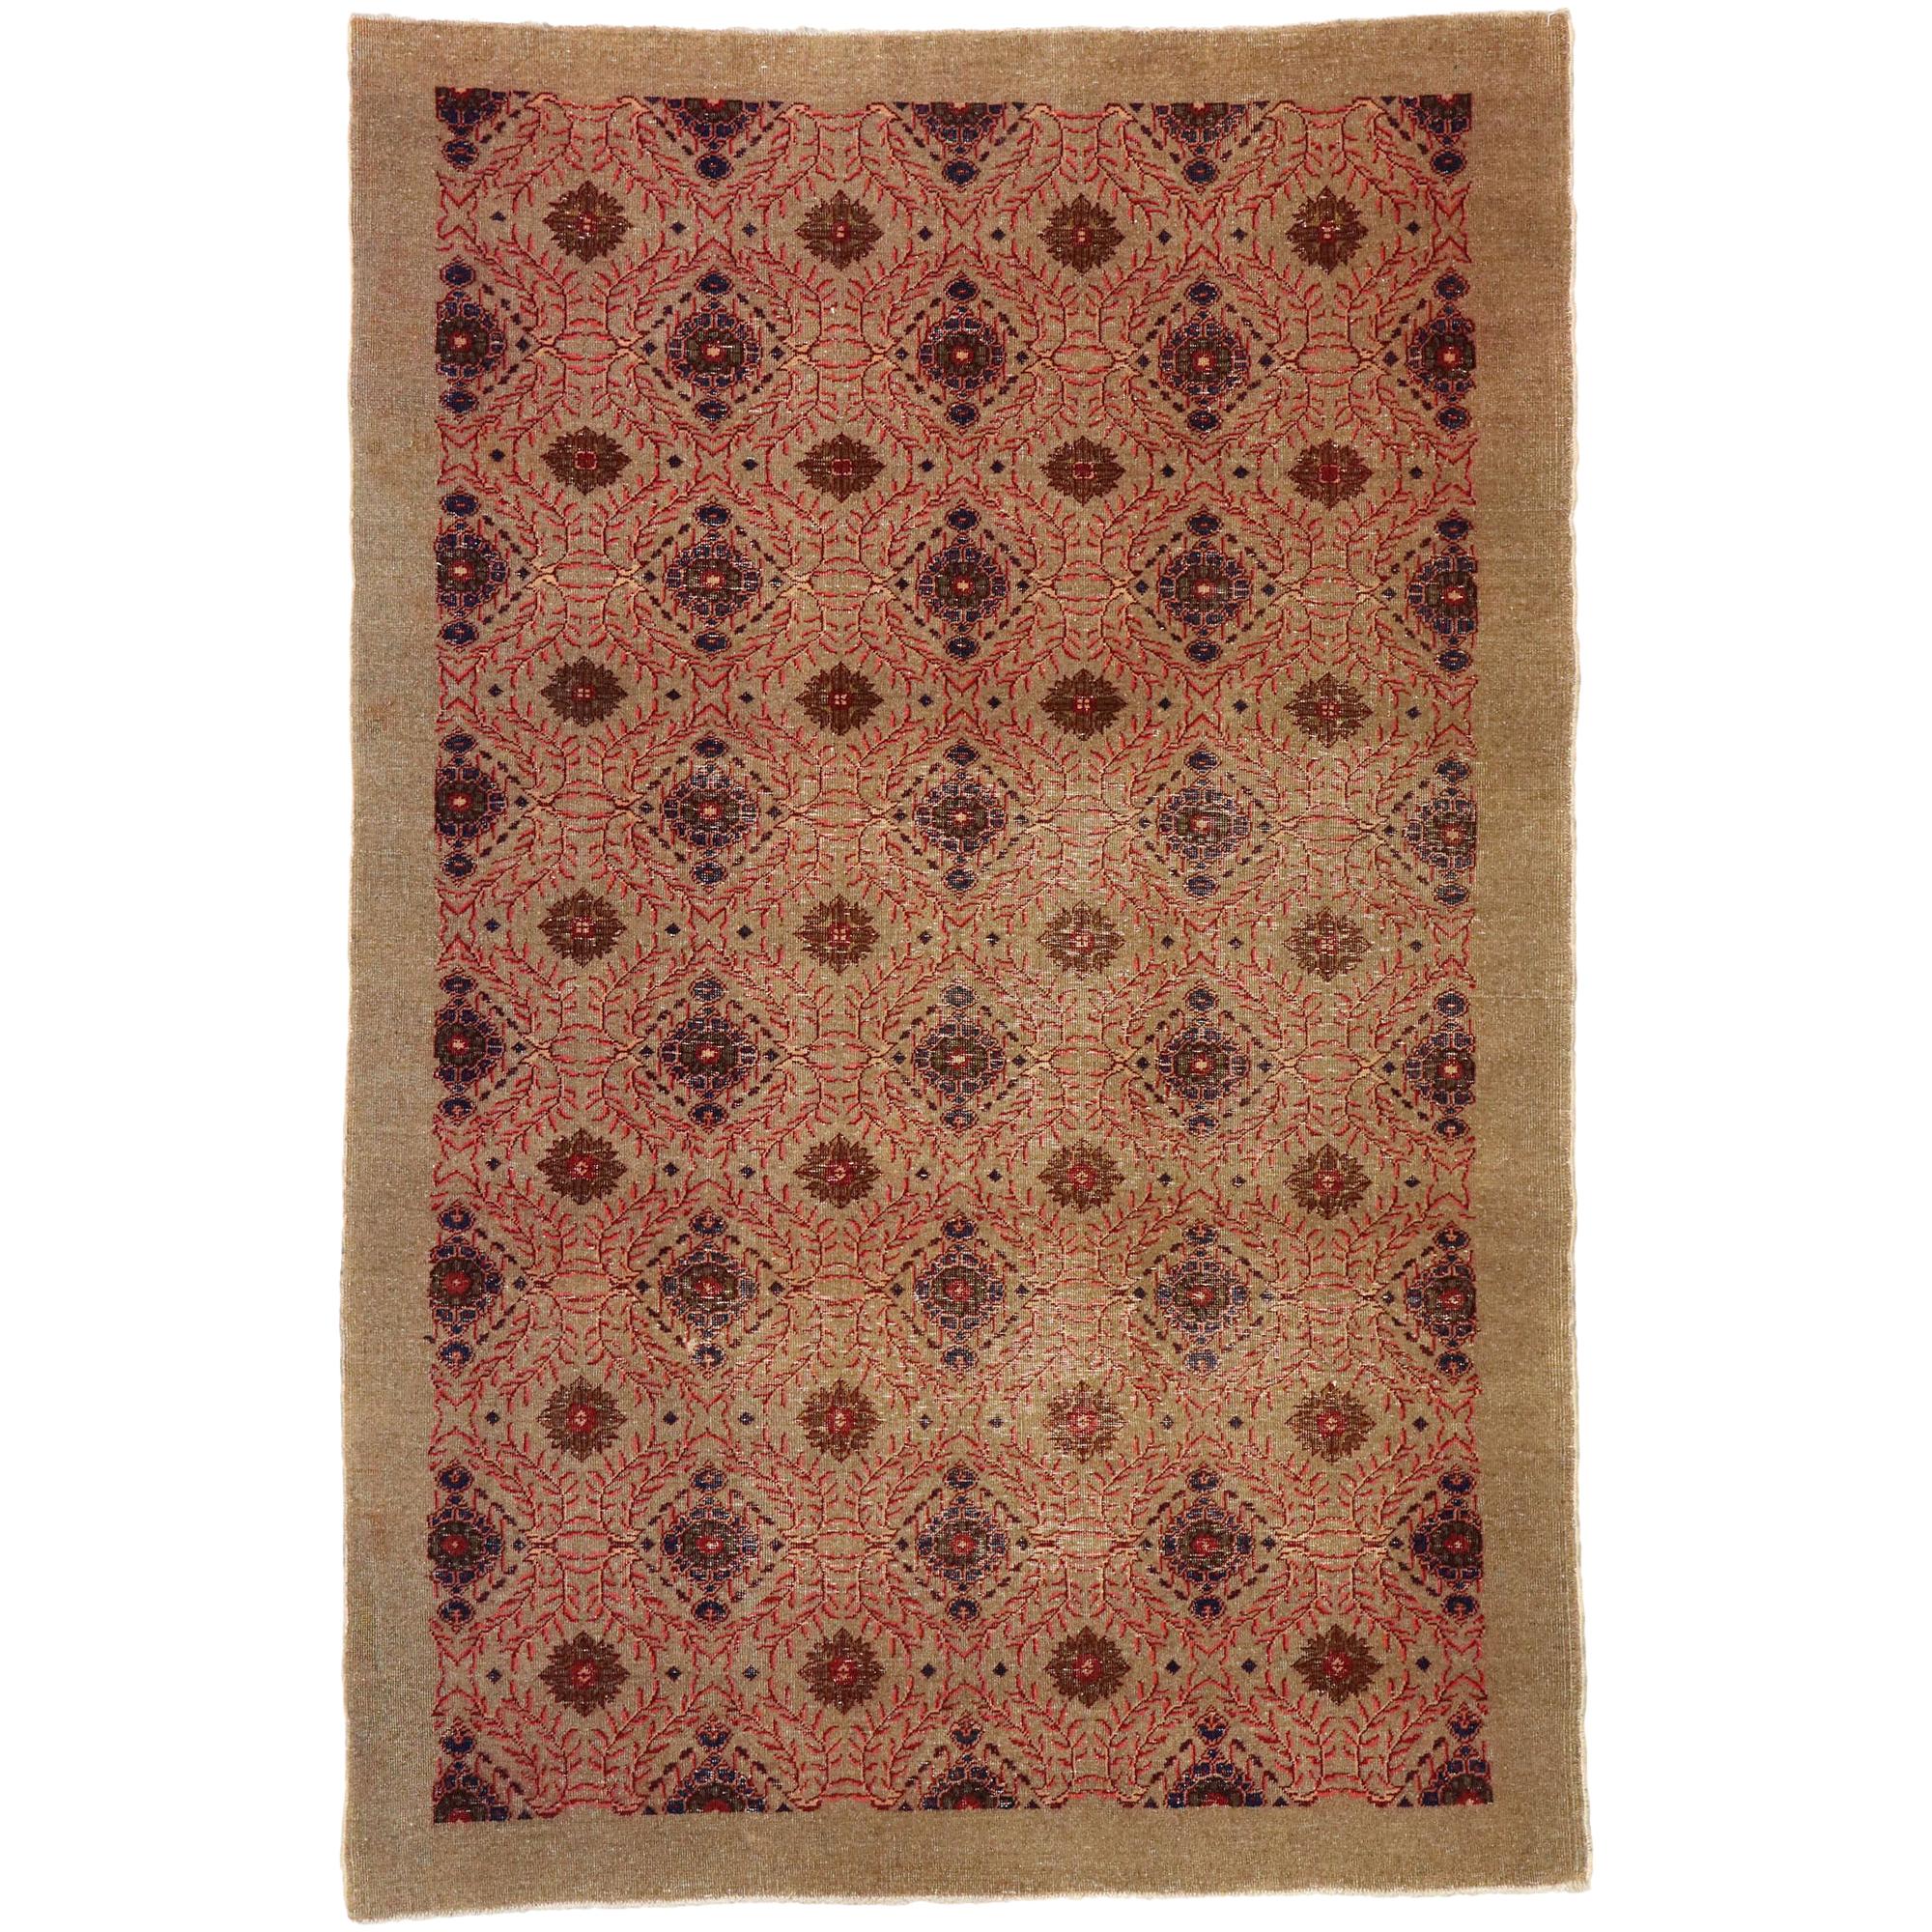 Gealterter türkischer Sivas-Teppich im modernen:: rustikalen Handwerker-Stil